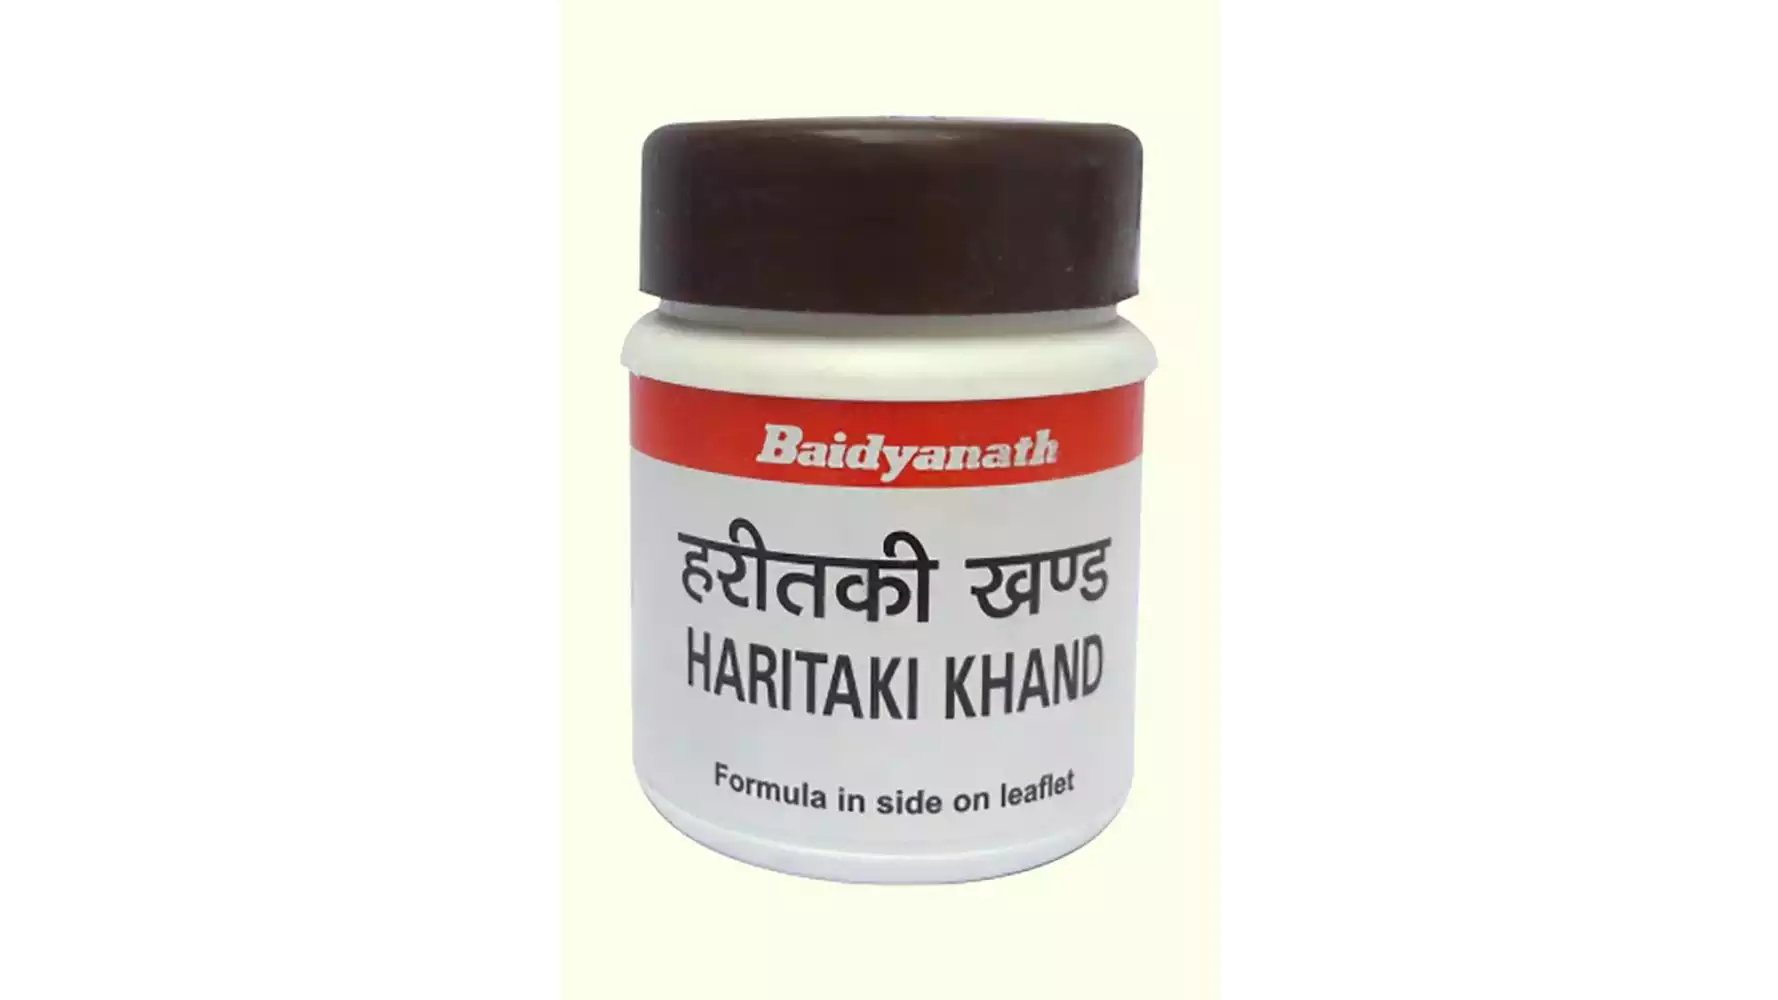 Baidyanath Haritaki Khand (50g)